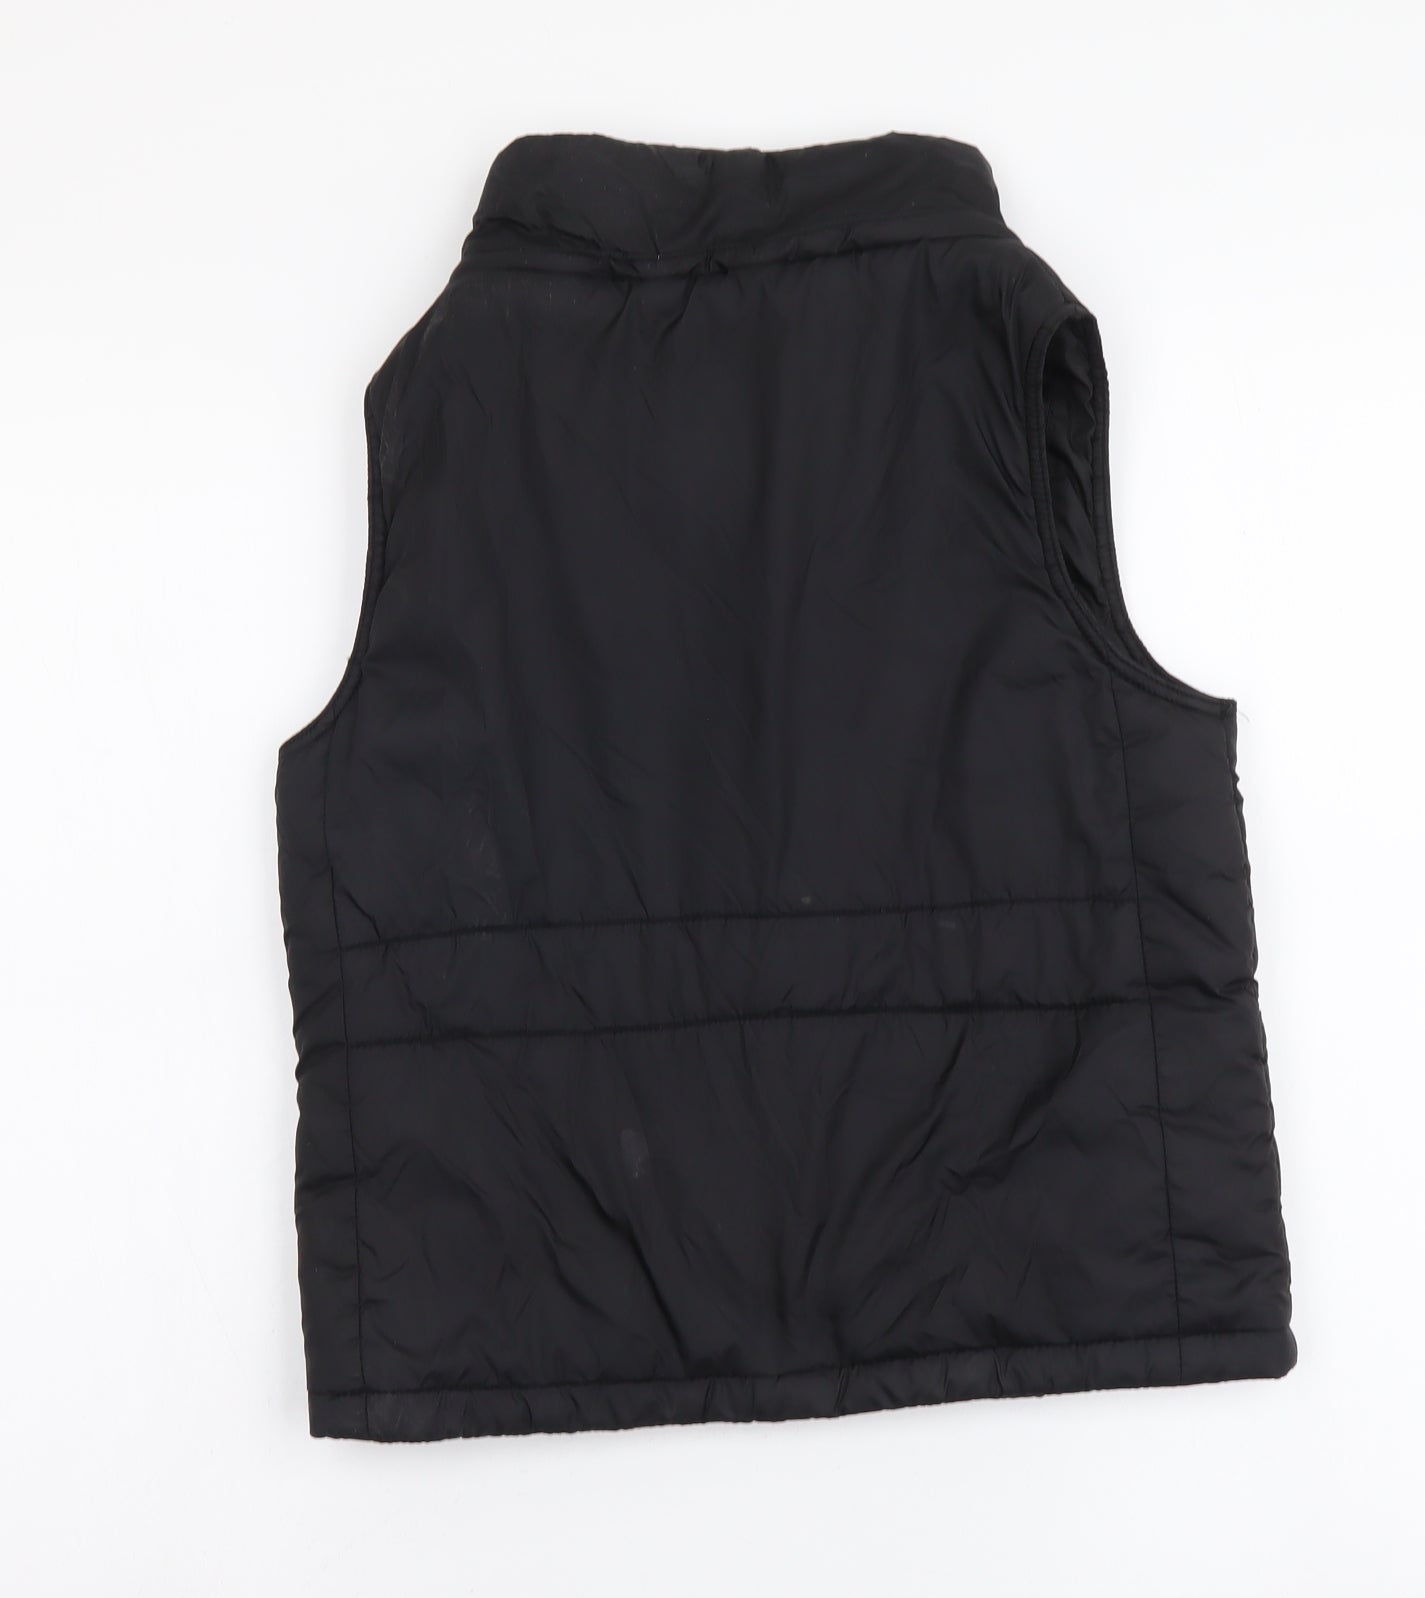 Urban Girls Black Gilet Jacket Size 8 Years Zip